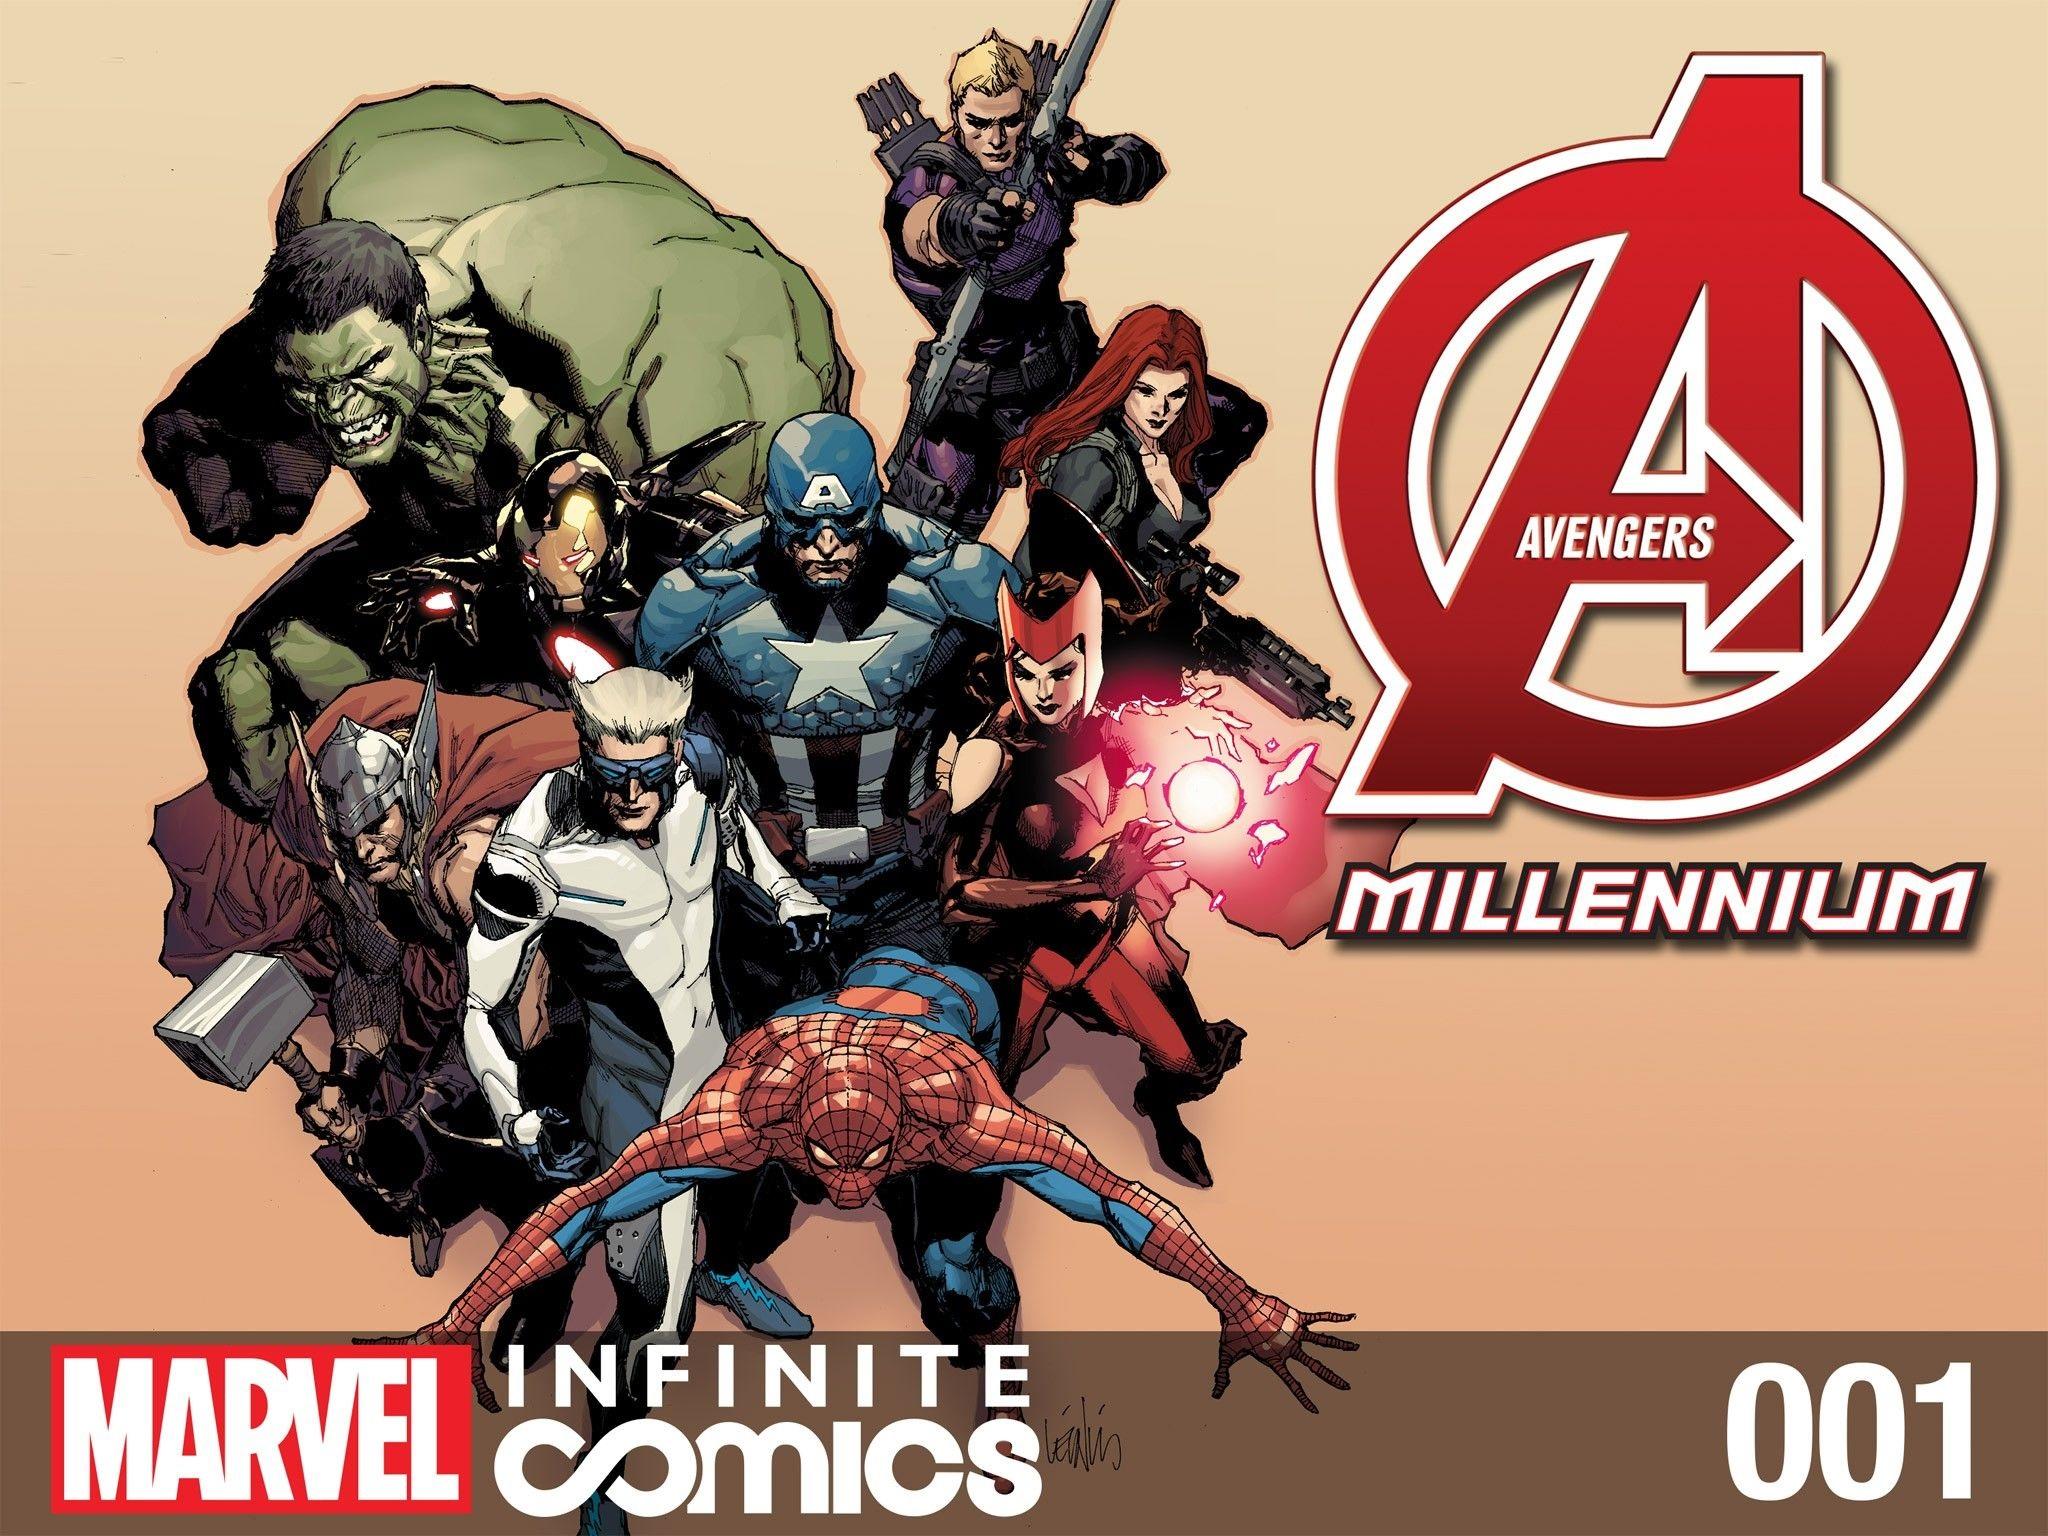 Avengers: Millennium Infinite Comic Vol. 1 #1